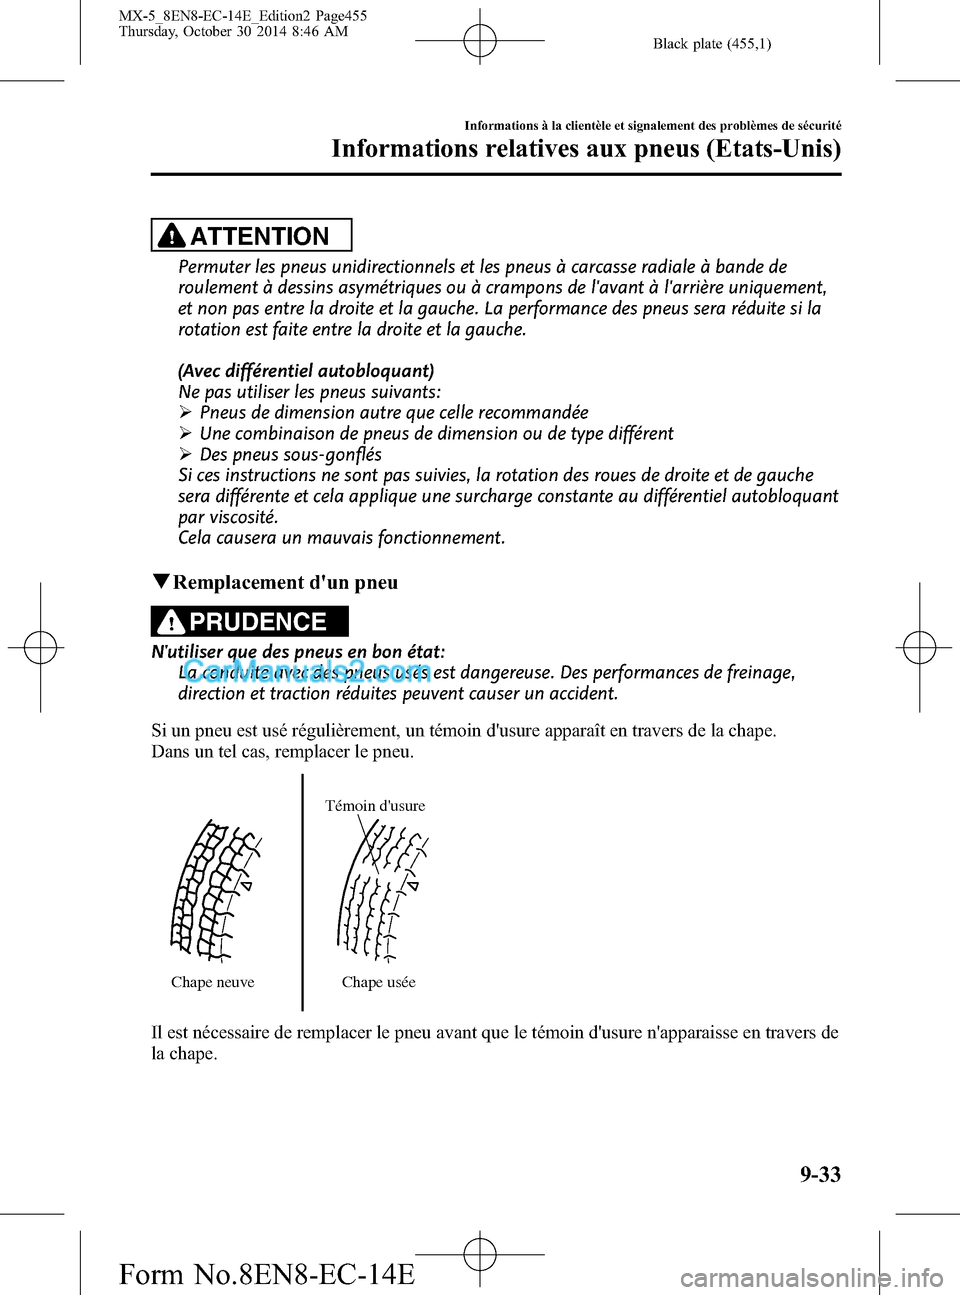 MAZDA MODEL MX-5 2015  Manuel du propriétaire (in French) Black plate (455,1)
ATTENTION
Permuter les pneus unidirectionnels et les pneus à carcasse radiale à bande de
roulement à dessins asymétriques ou à crampons de lavant à larrière uniquement,
et